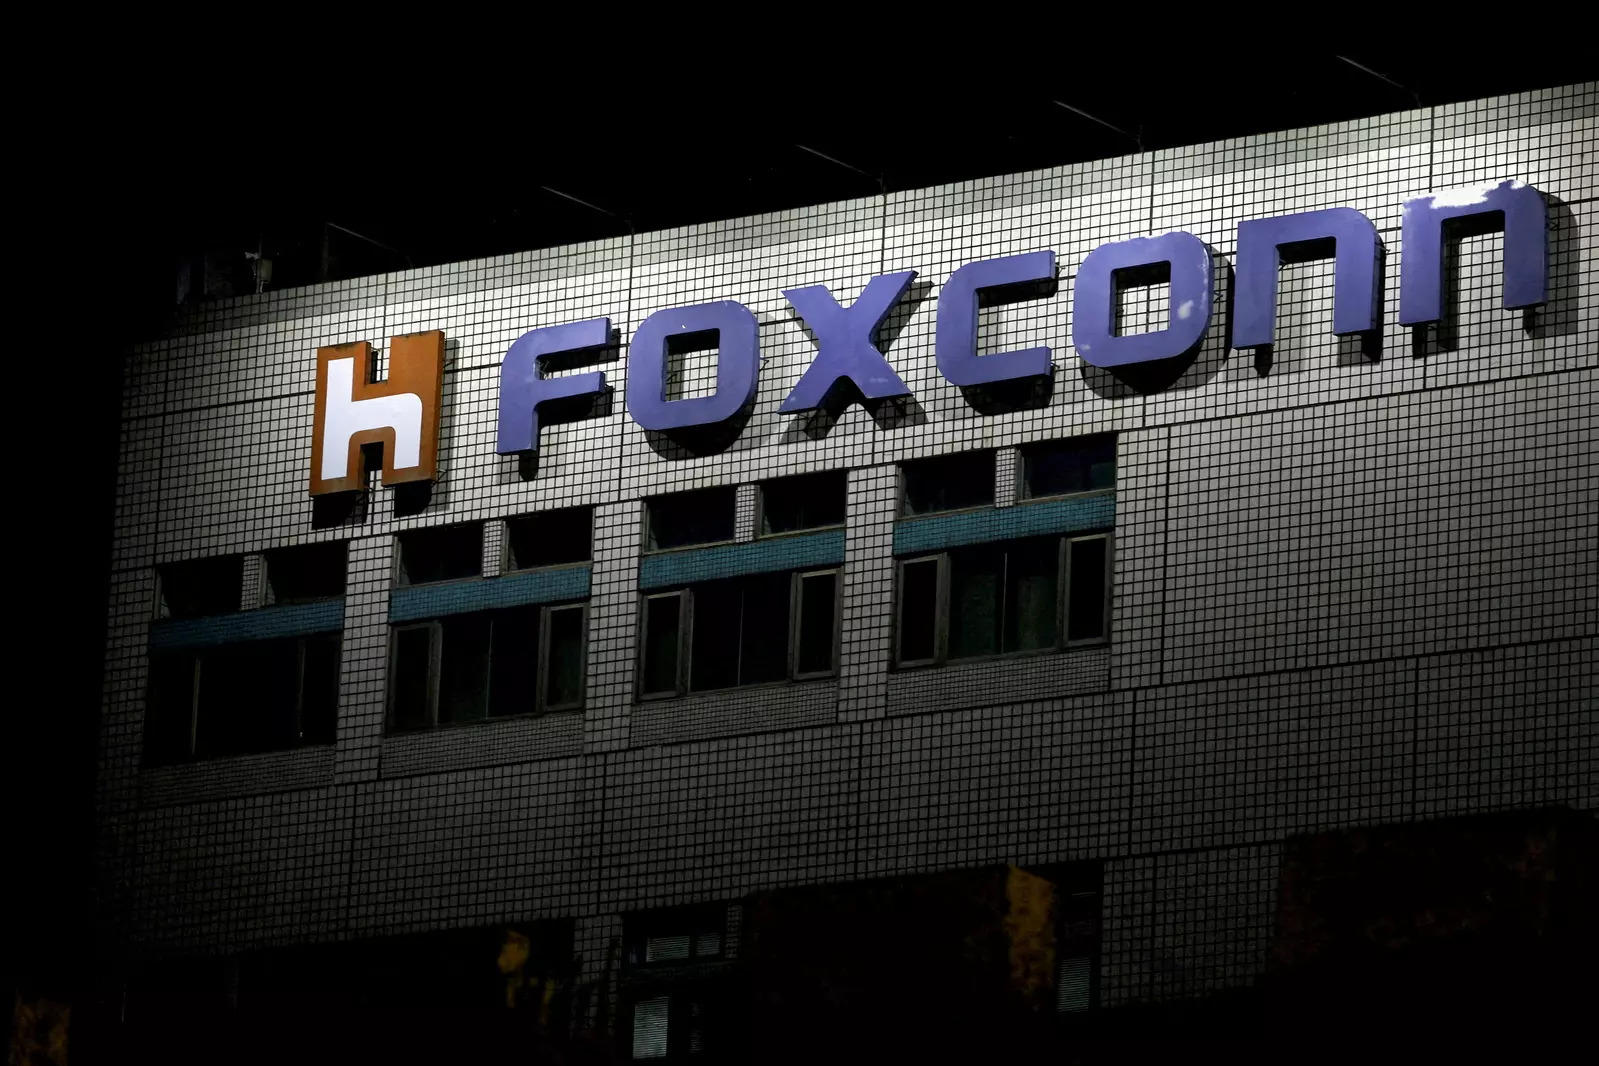 The logo of Foxconn